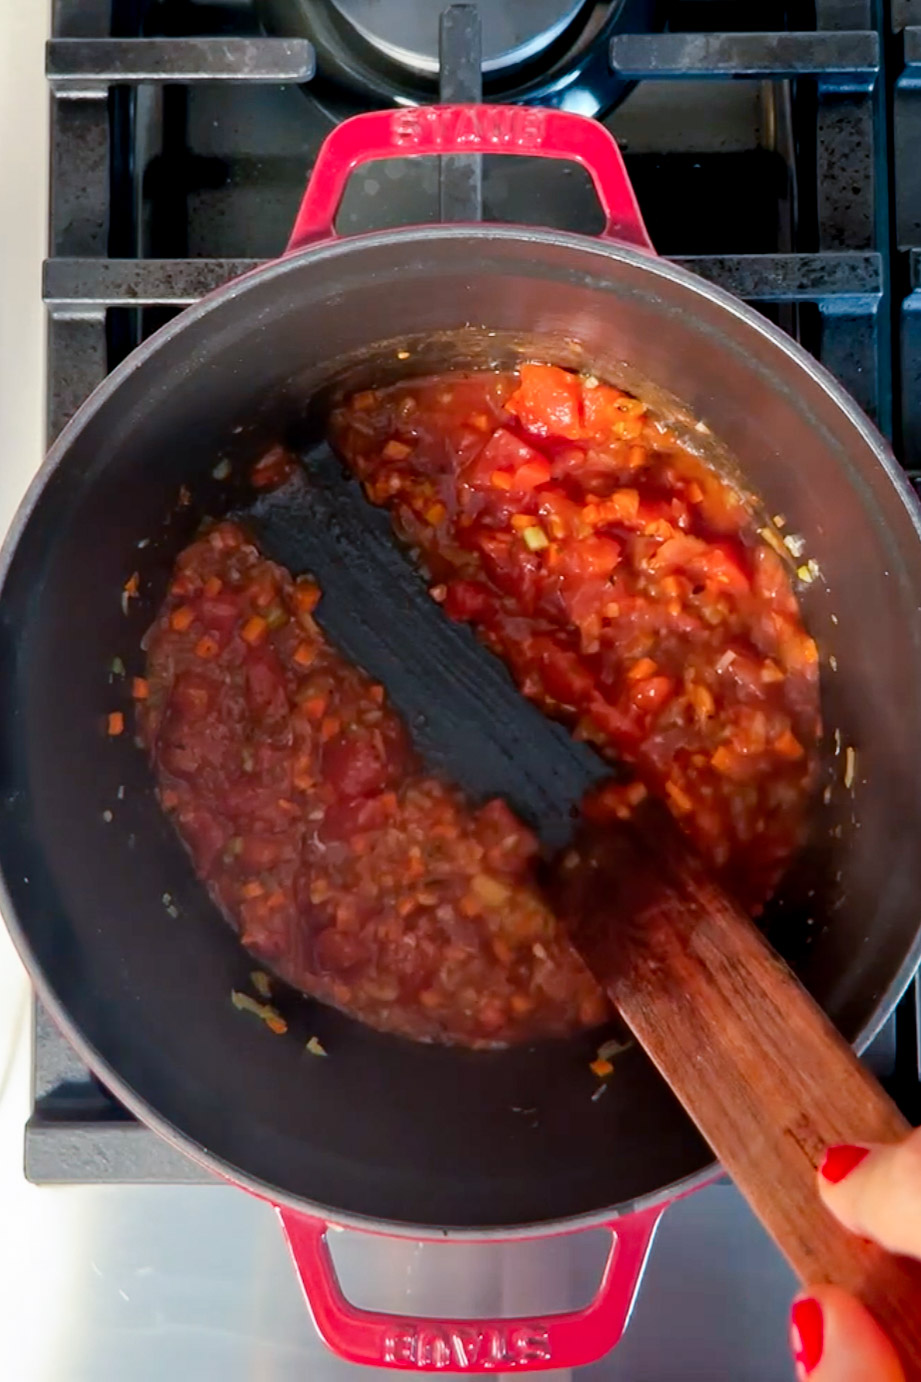 Una persona revuelve una salsa en una sartén en la estufa.